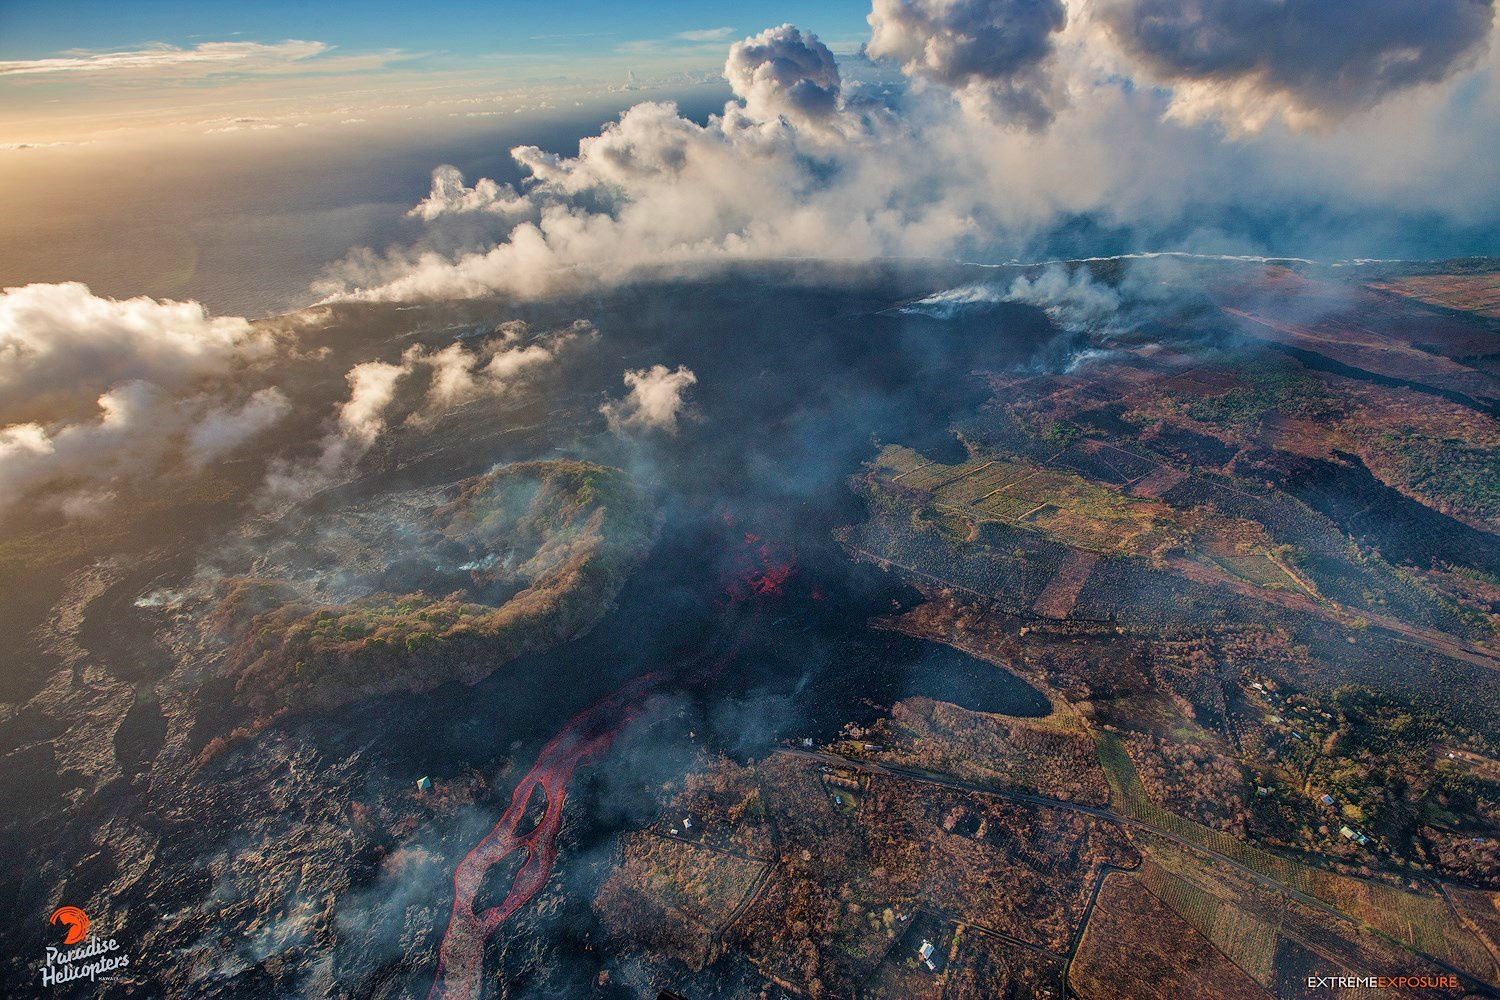 Kilauea zone de rift Est - nouveau chemin emprunté par la coulée de lave à l'ouest du cratère Kapoho (écoulement du bas de la photo vers l'océan)  - photo Bruce Omori 11.07.2018 / 5h45